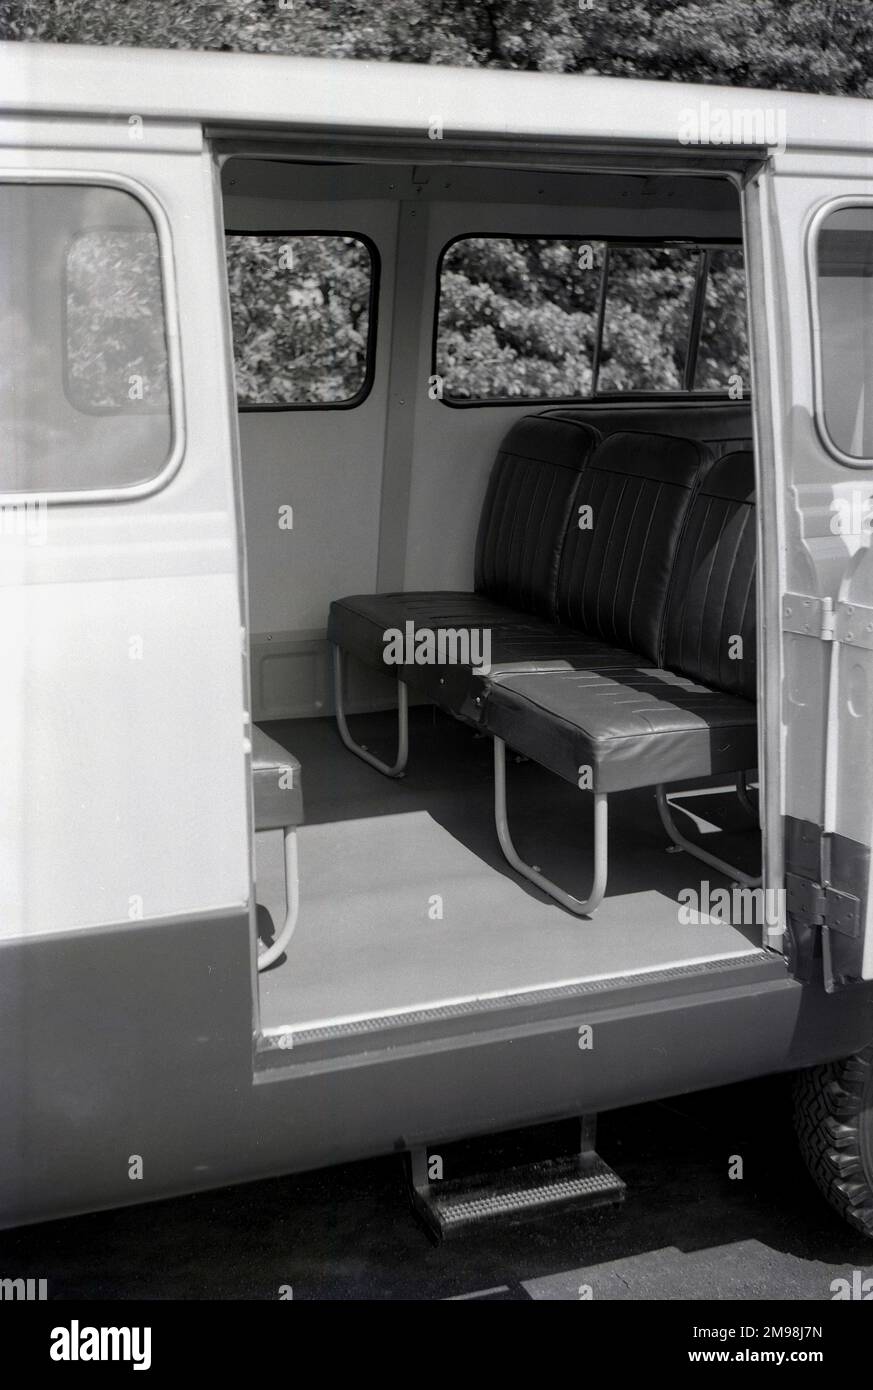 1957, historique, vue latérale de l'intérieur d'un minibus Ford Thames 15 cwt 400E ou d'un petit porte-bagages, montrant la configuration de base des sièges. La fourgonnette 400E était un véhicule commercial léger fabriqué à Dagenham, en Grande-Bretagne par Ford UK de 1957 à 1965. Banque D'Images